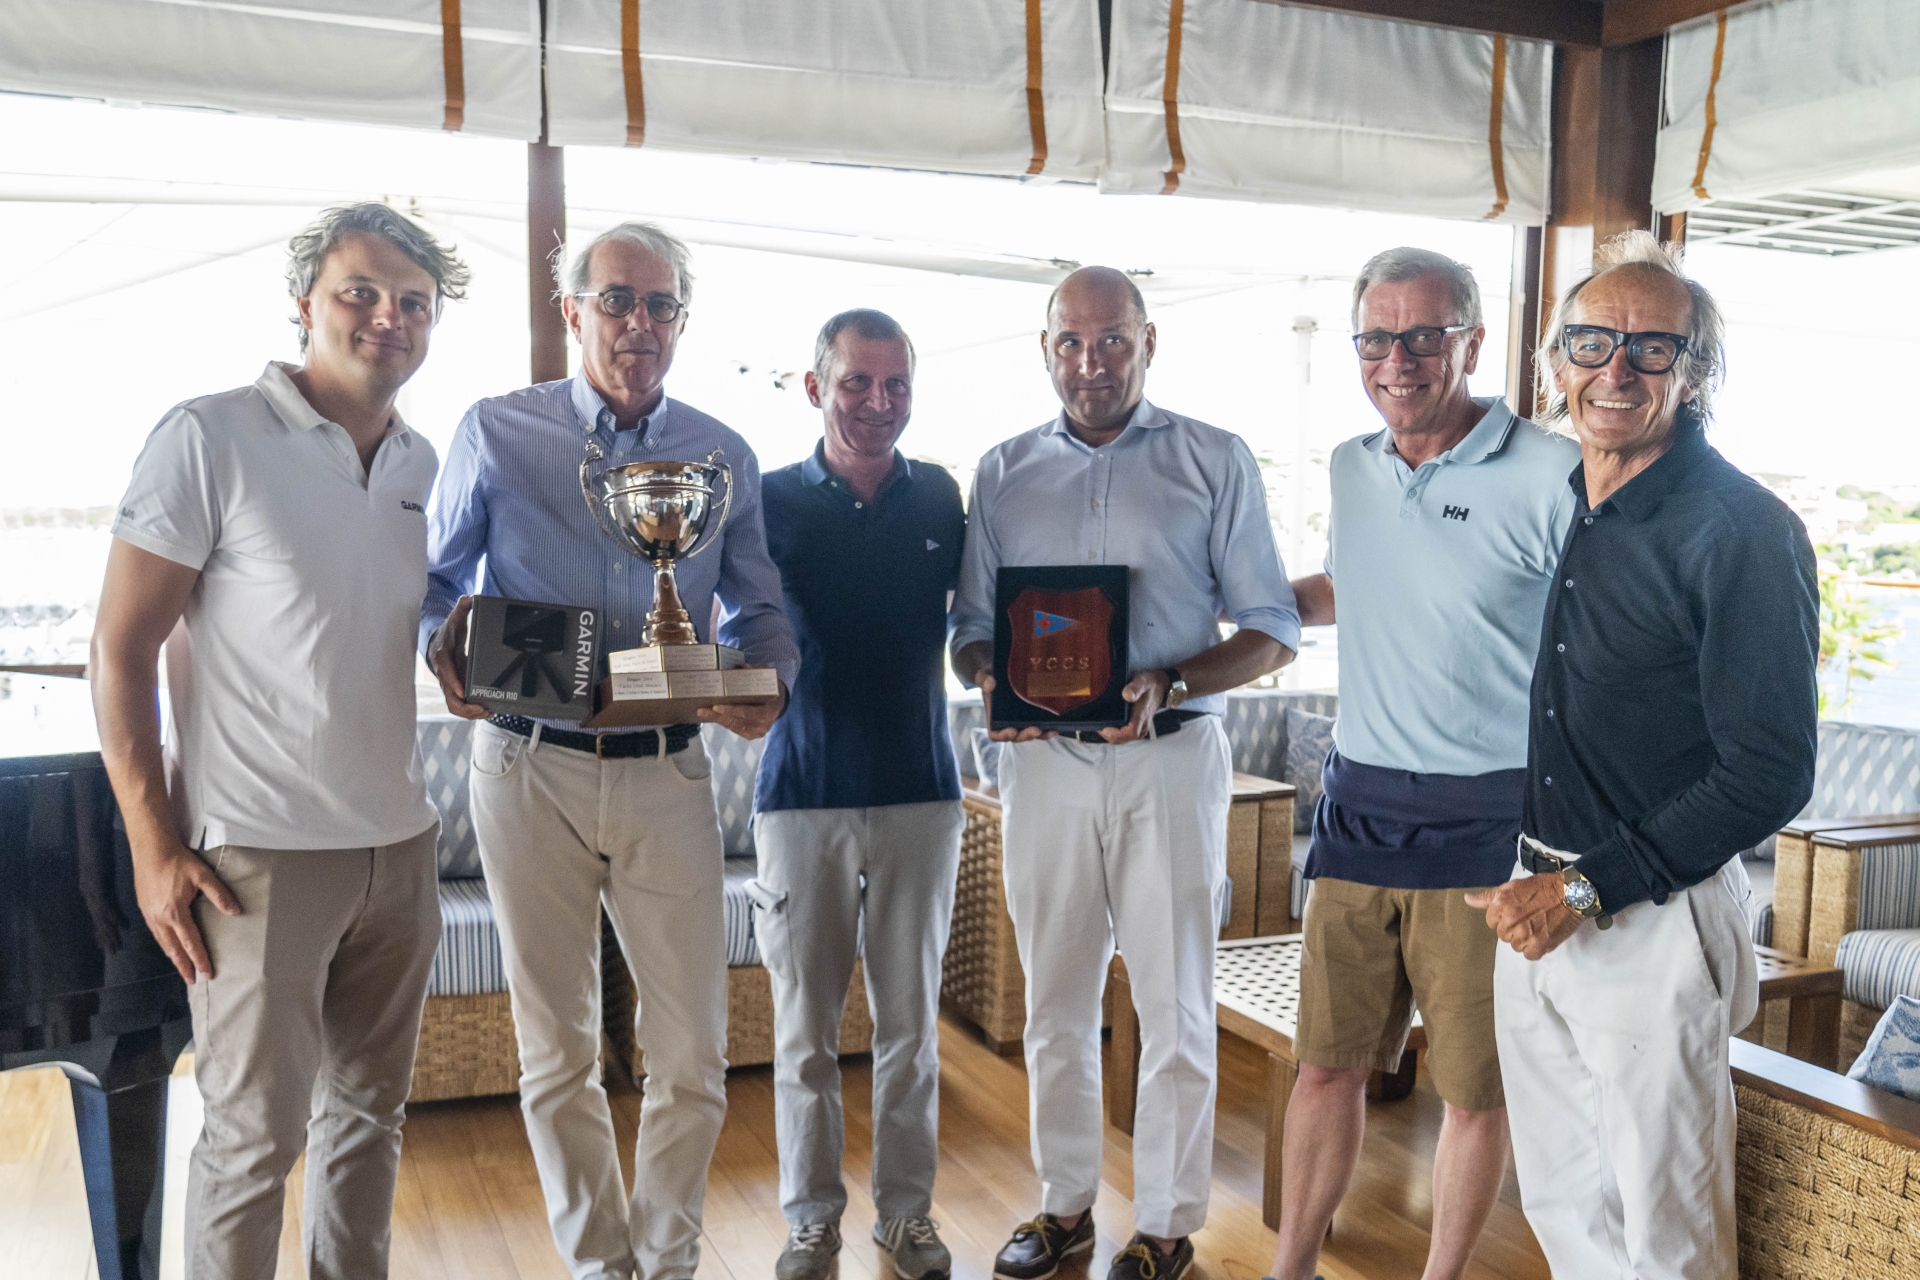 Il team dello YCCS si riconferma vincitore del Vela & Golf - NEWS - Yacht Club Costa Smeralda